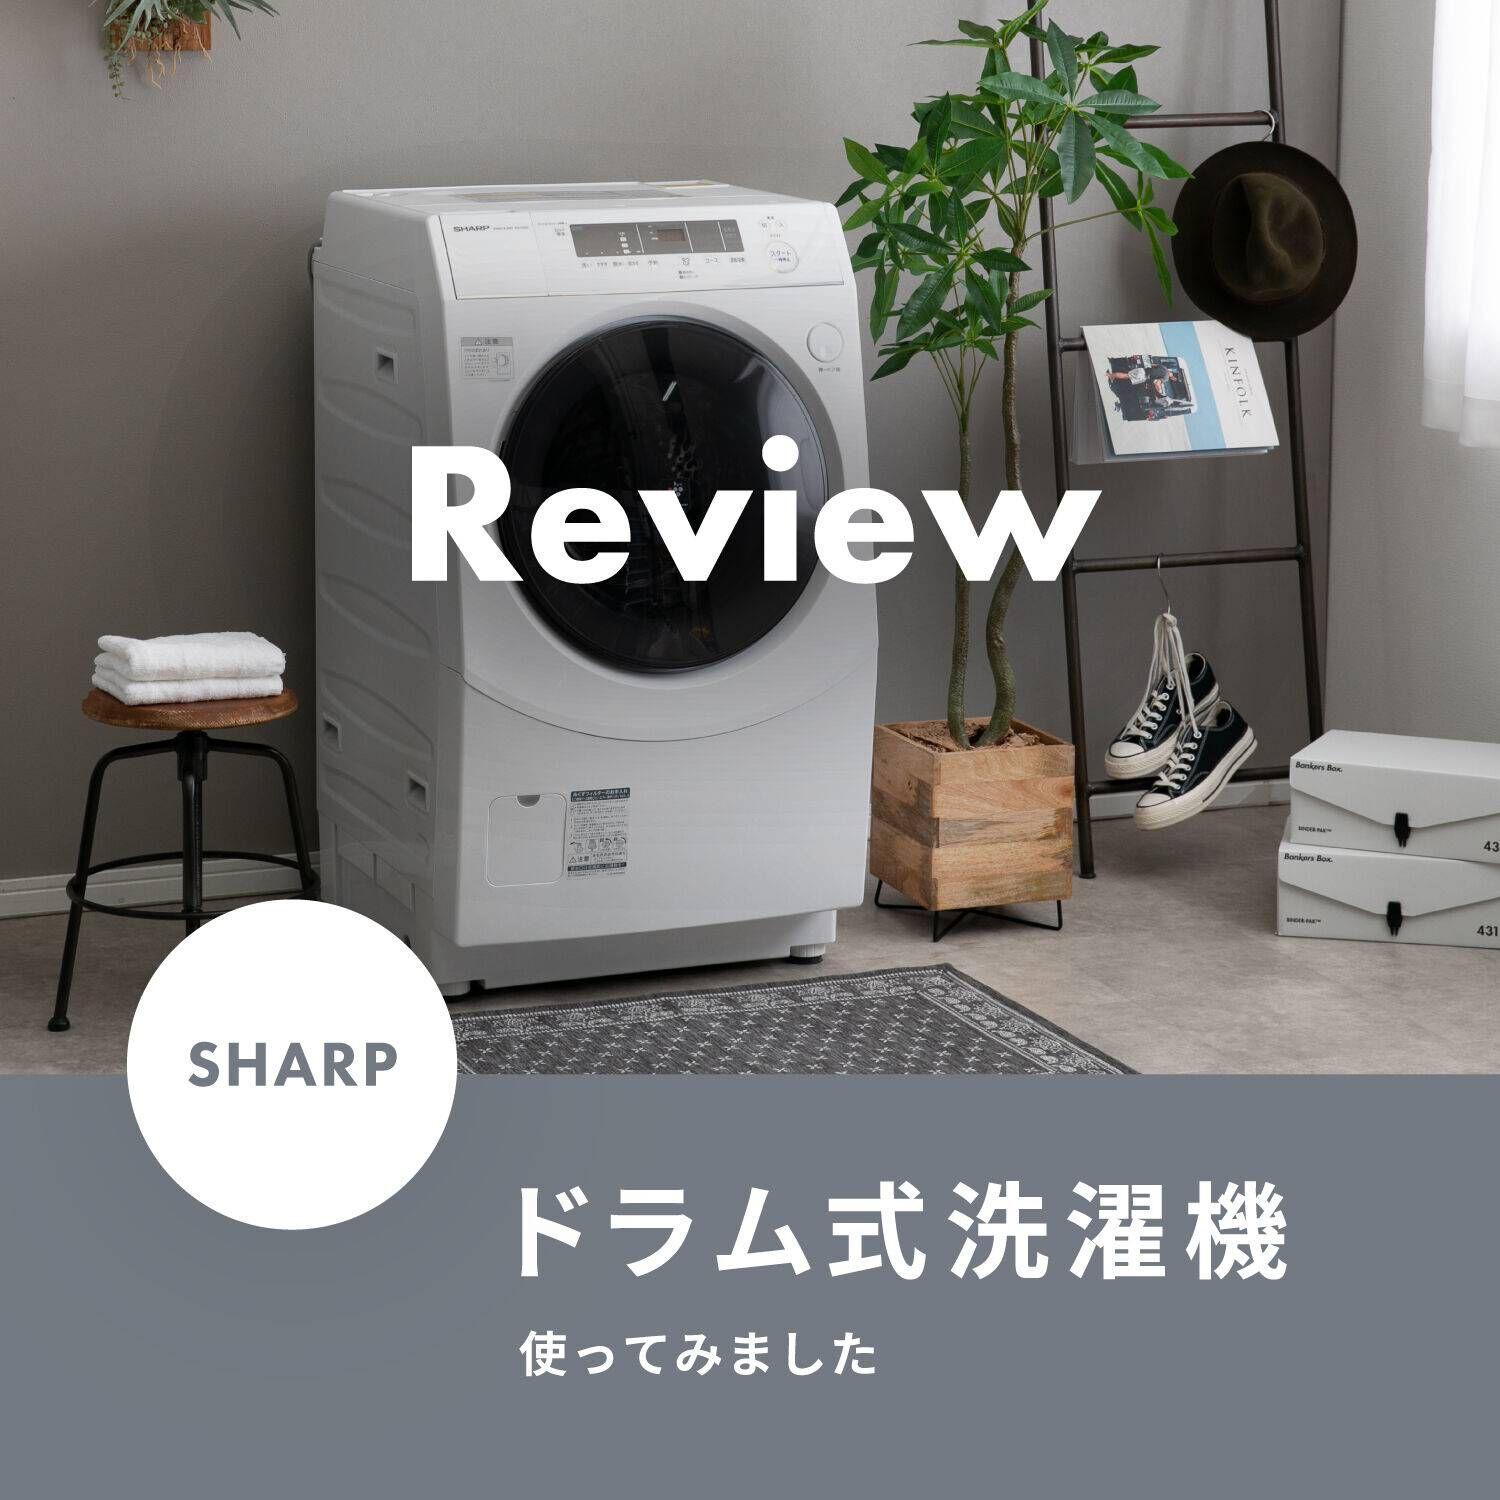 シャープ【sharp】ドラム式洗濯乾燥機の機能紹介＆レビュー 